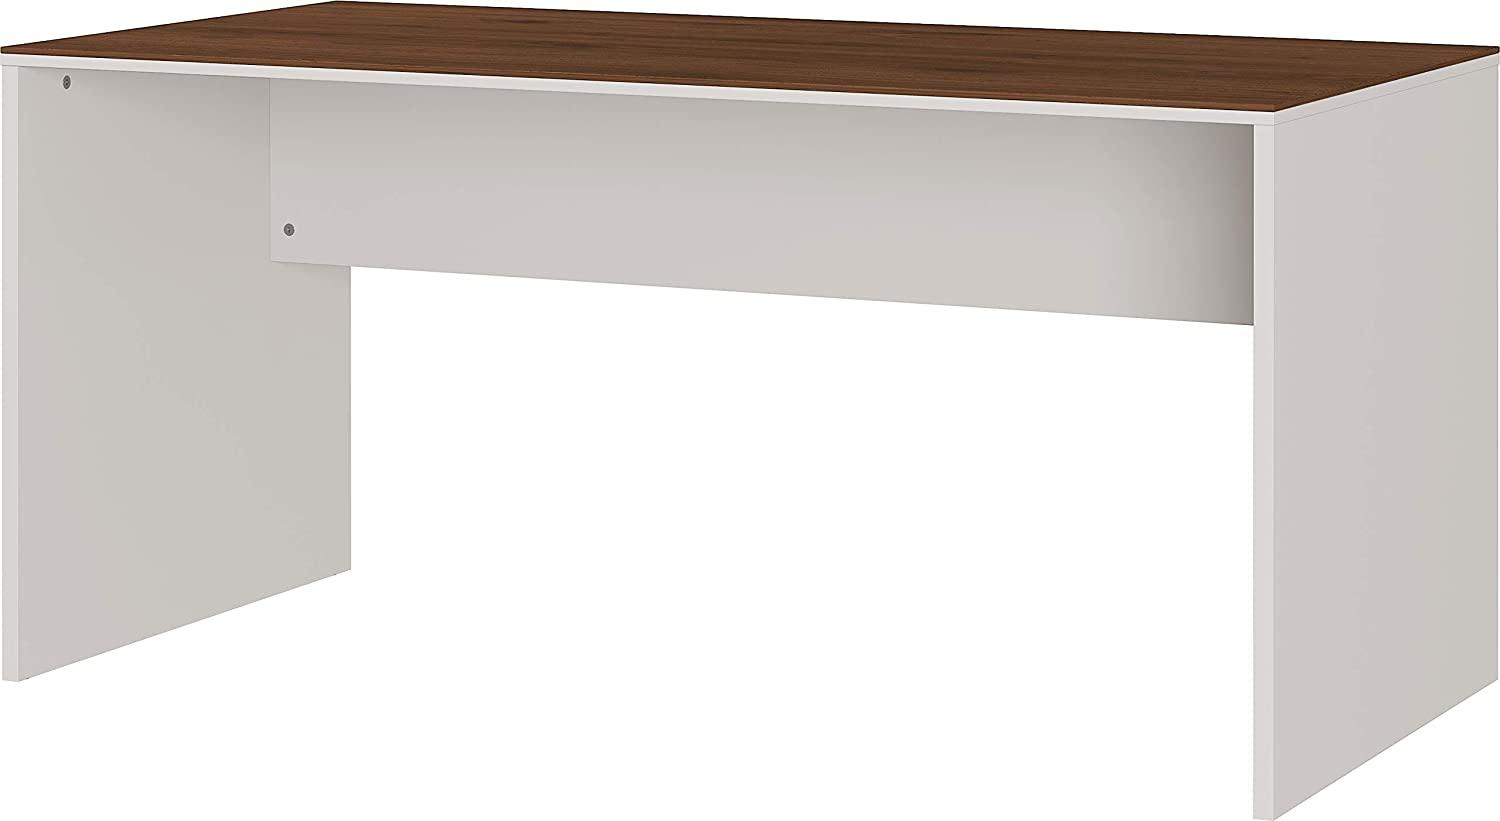 Amazon Marke - Alkove Schreibtisch Mantua, ideal für Home Office, in Kaschmir/Nussbaum-Nachbildung, 158 x 75 x 79 cm (BxHxT) Bild 1